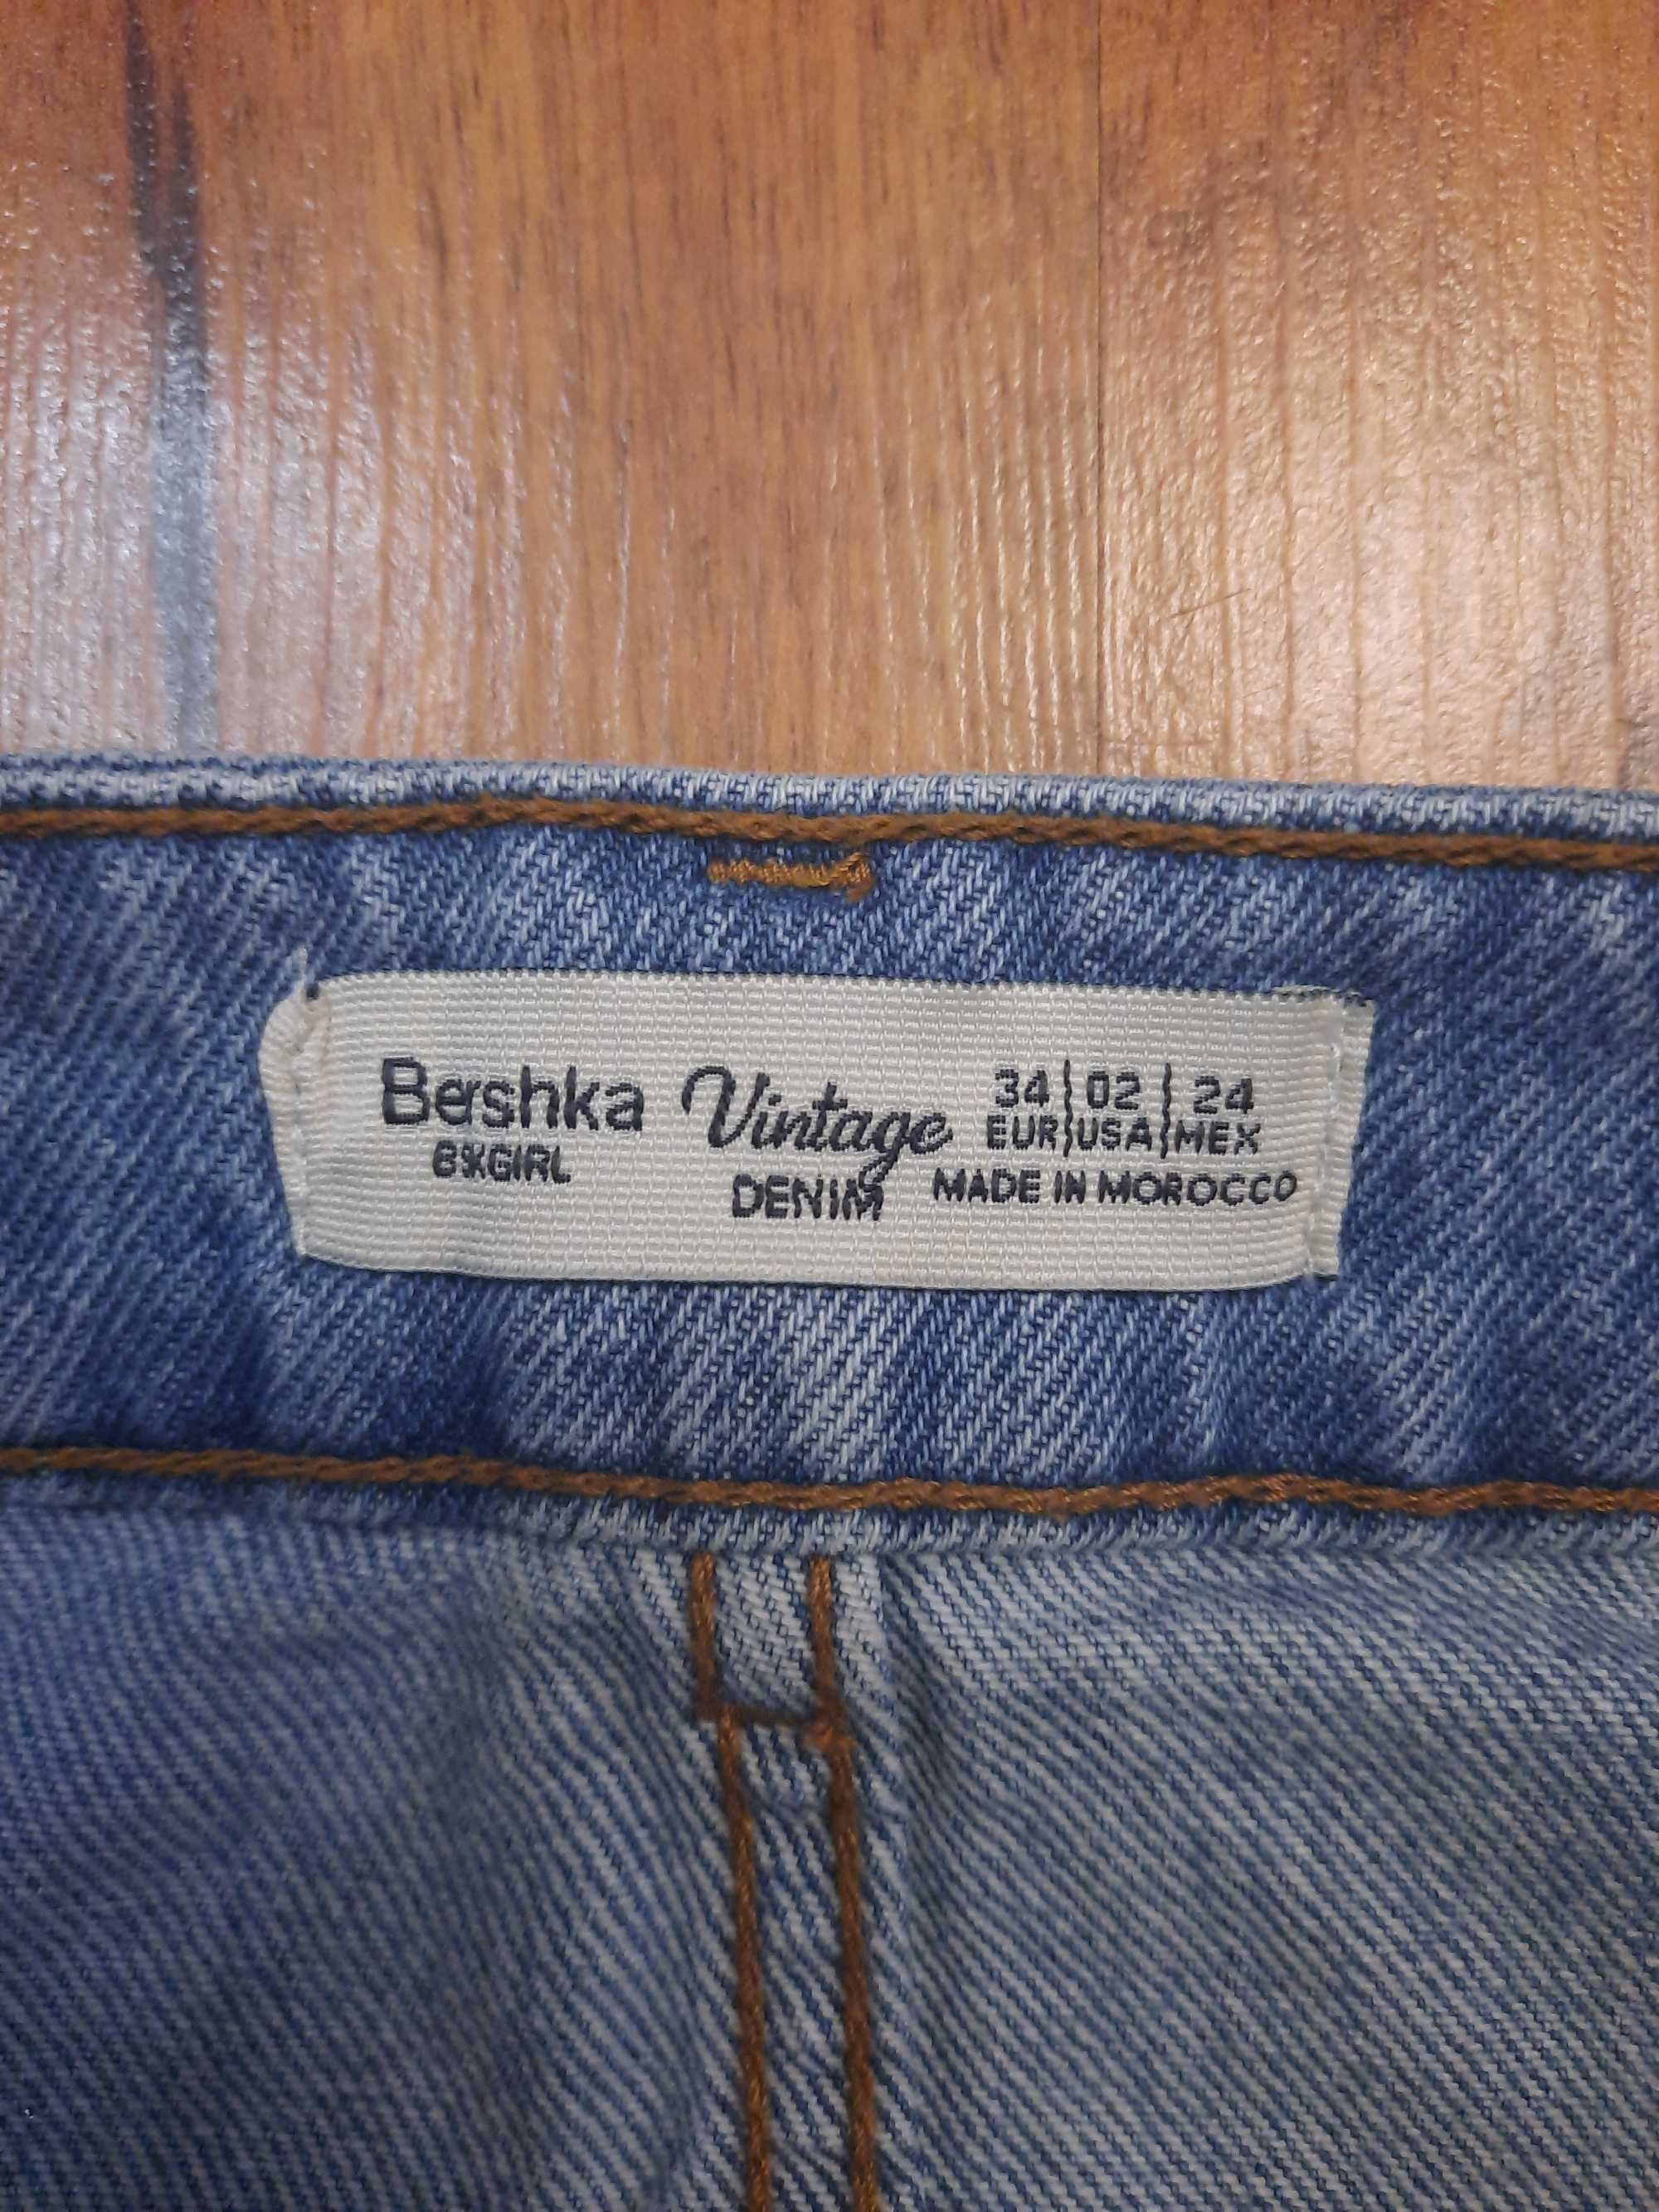 Spódnica jeansowa krótka spódniczka Bershka rozmiar 34 XS